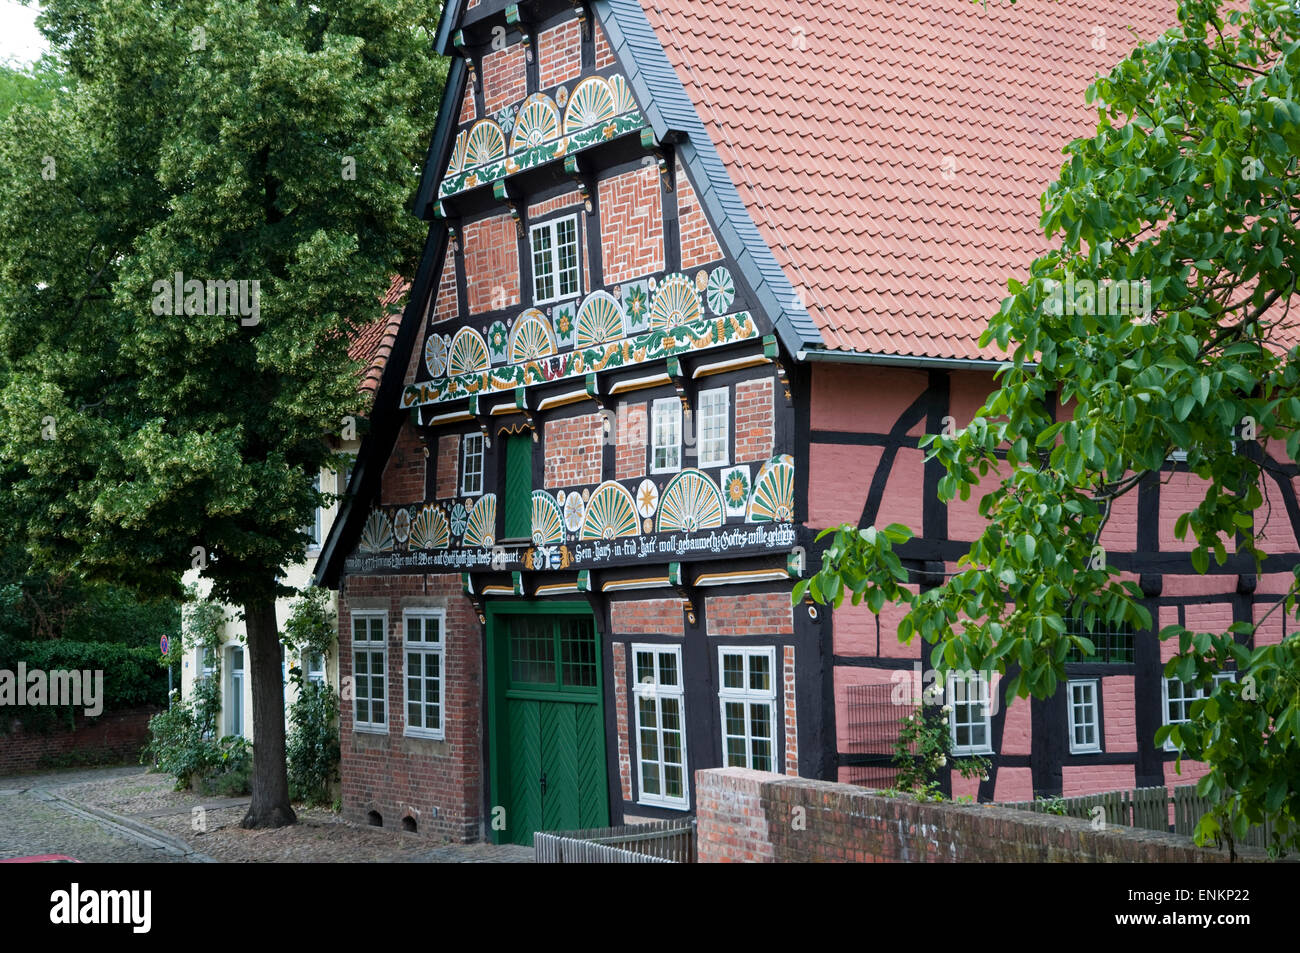 Fachwerkhaus Strukturstrasse 7, Verden an der Aller, Niedersachsen, Deutschland |  Timber framed house, Verden on Aller, Lower S Stock Photo